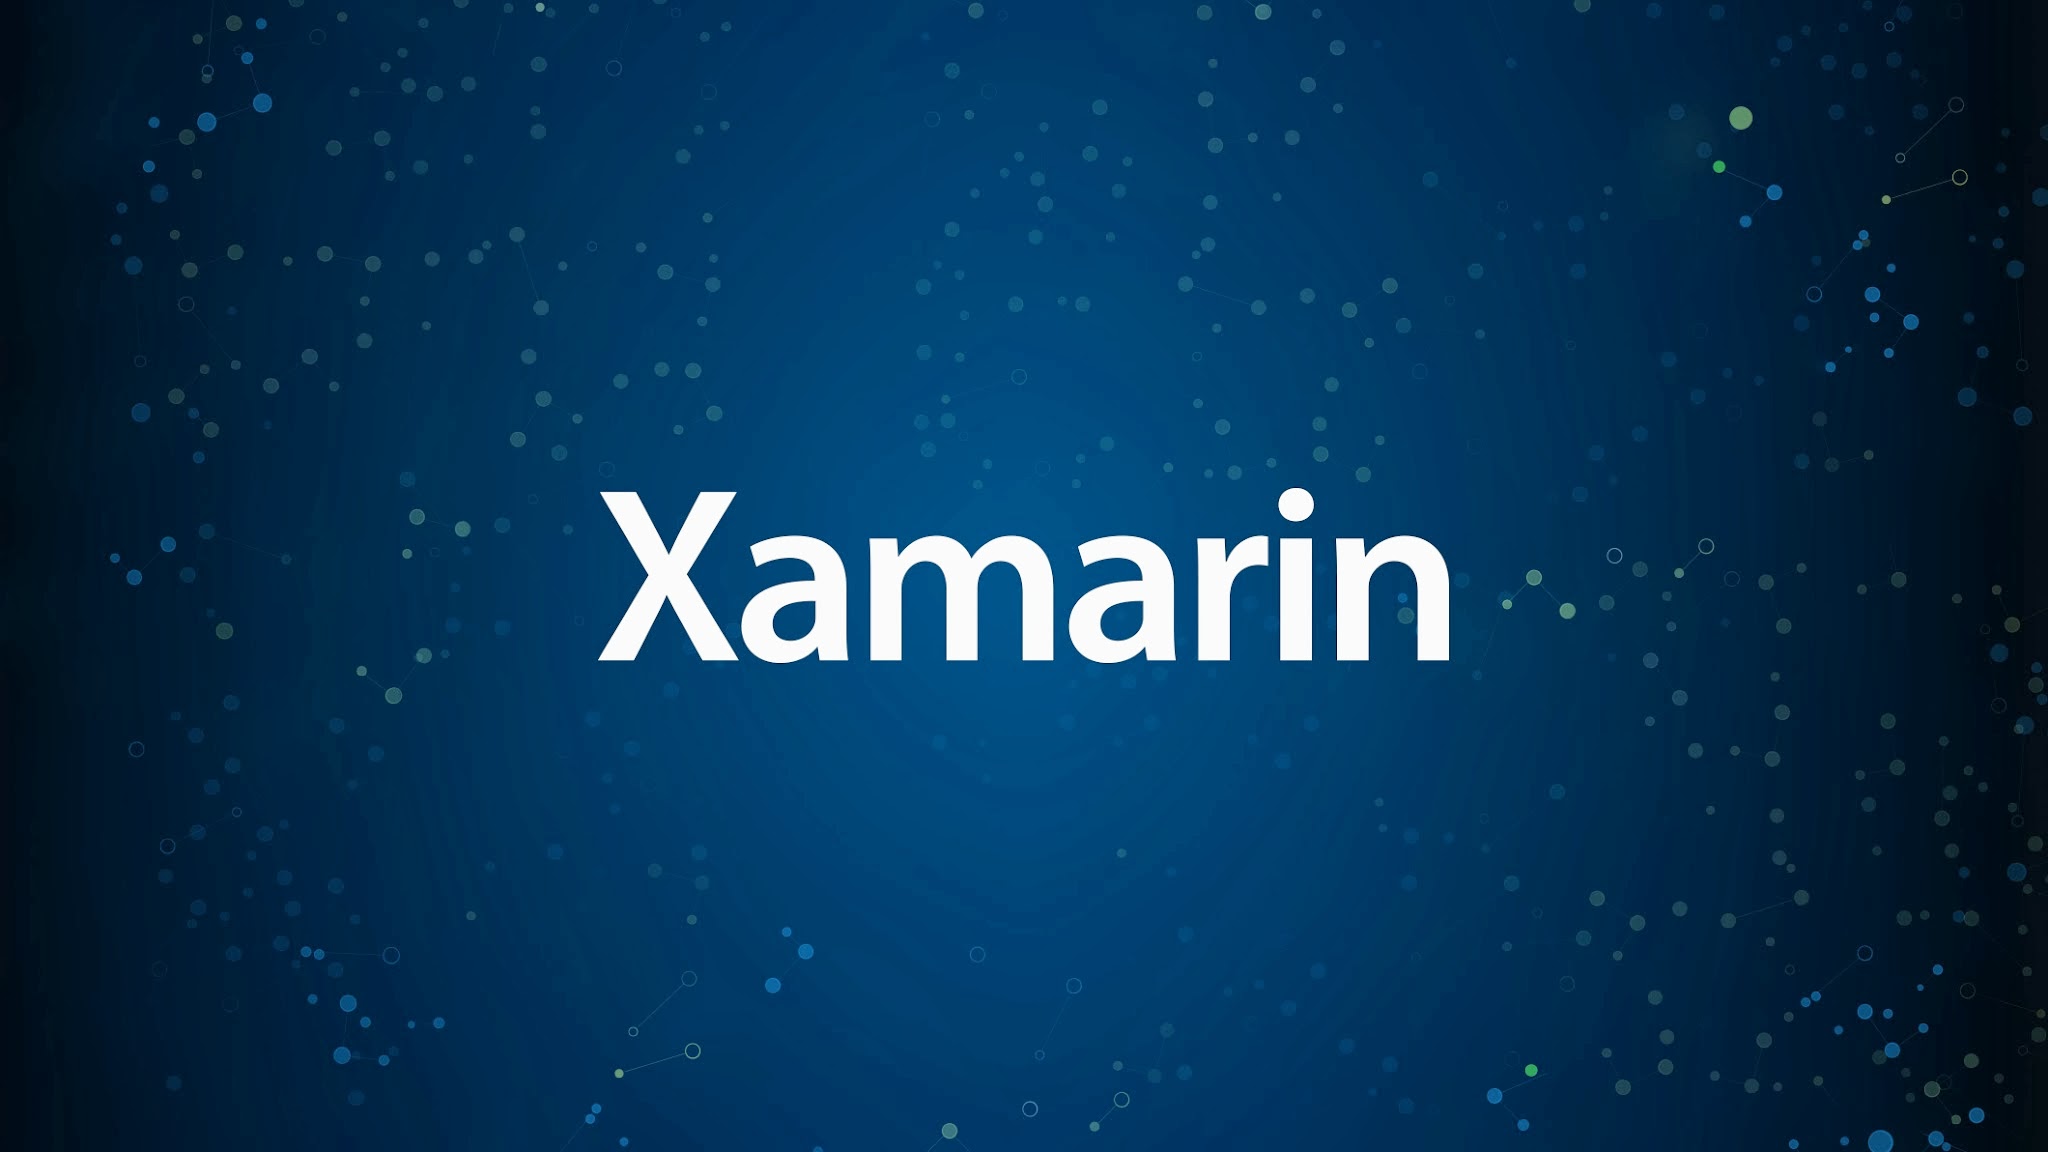 New adventure – Joining Xamarin team